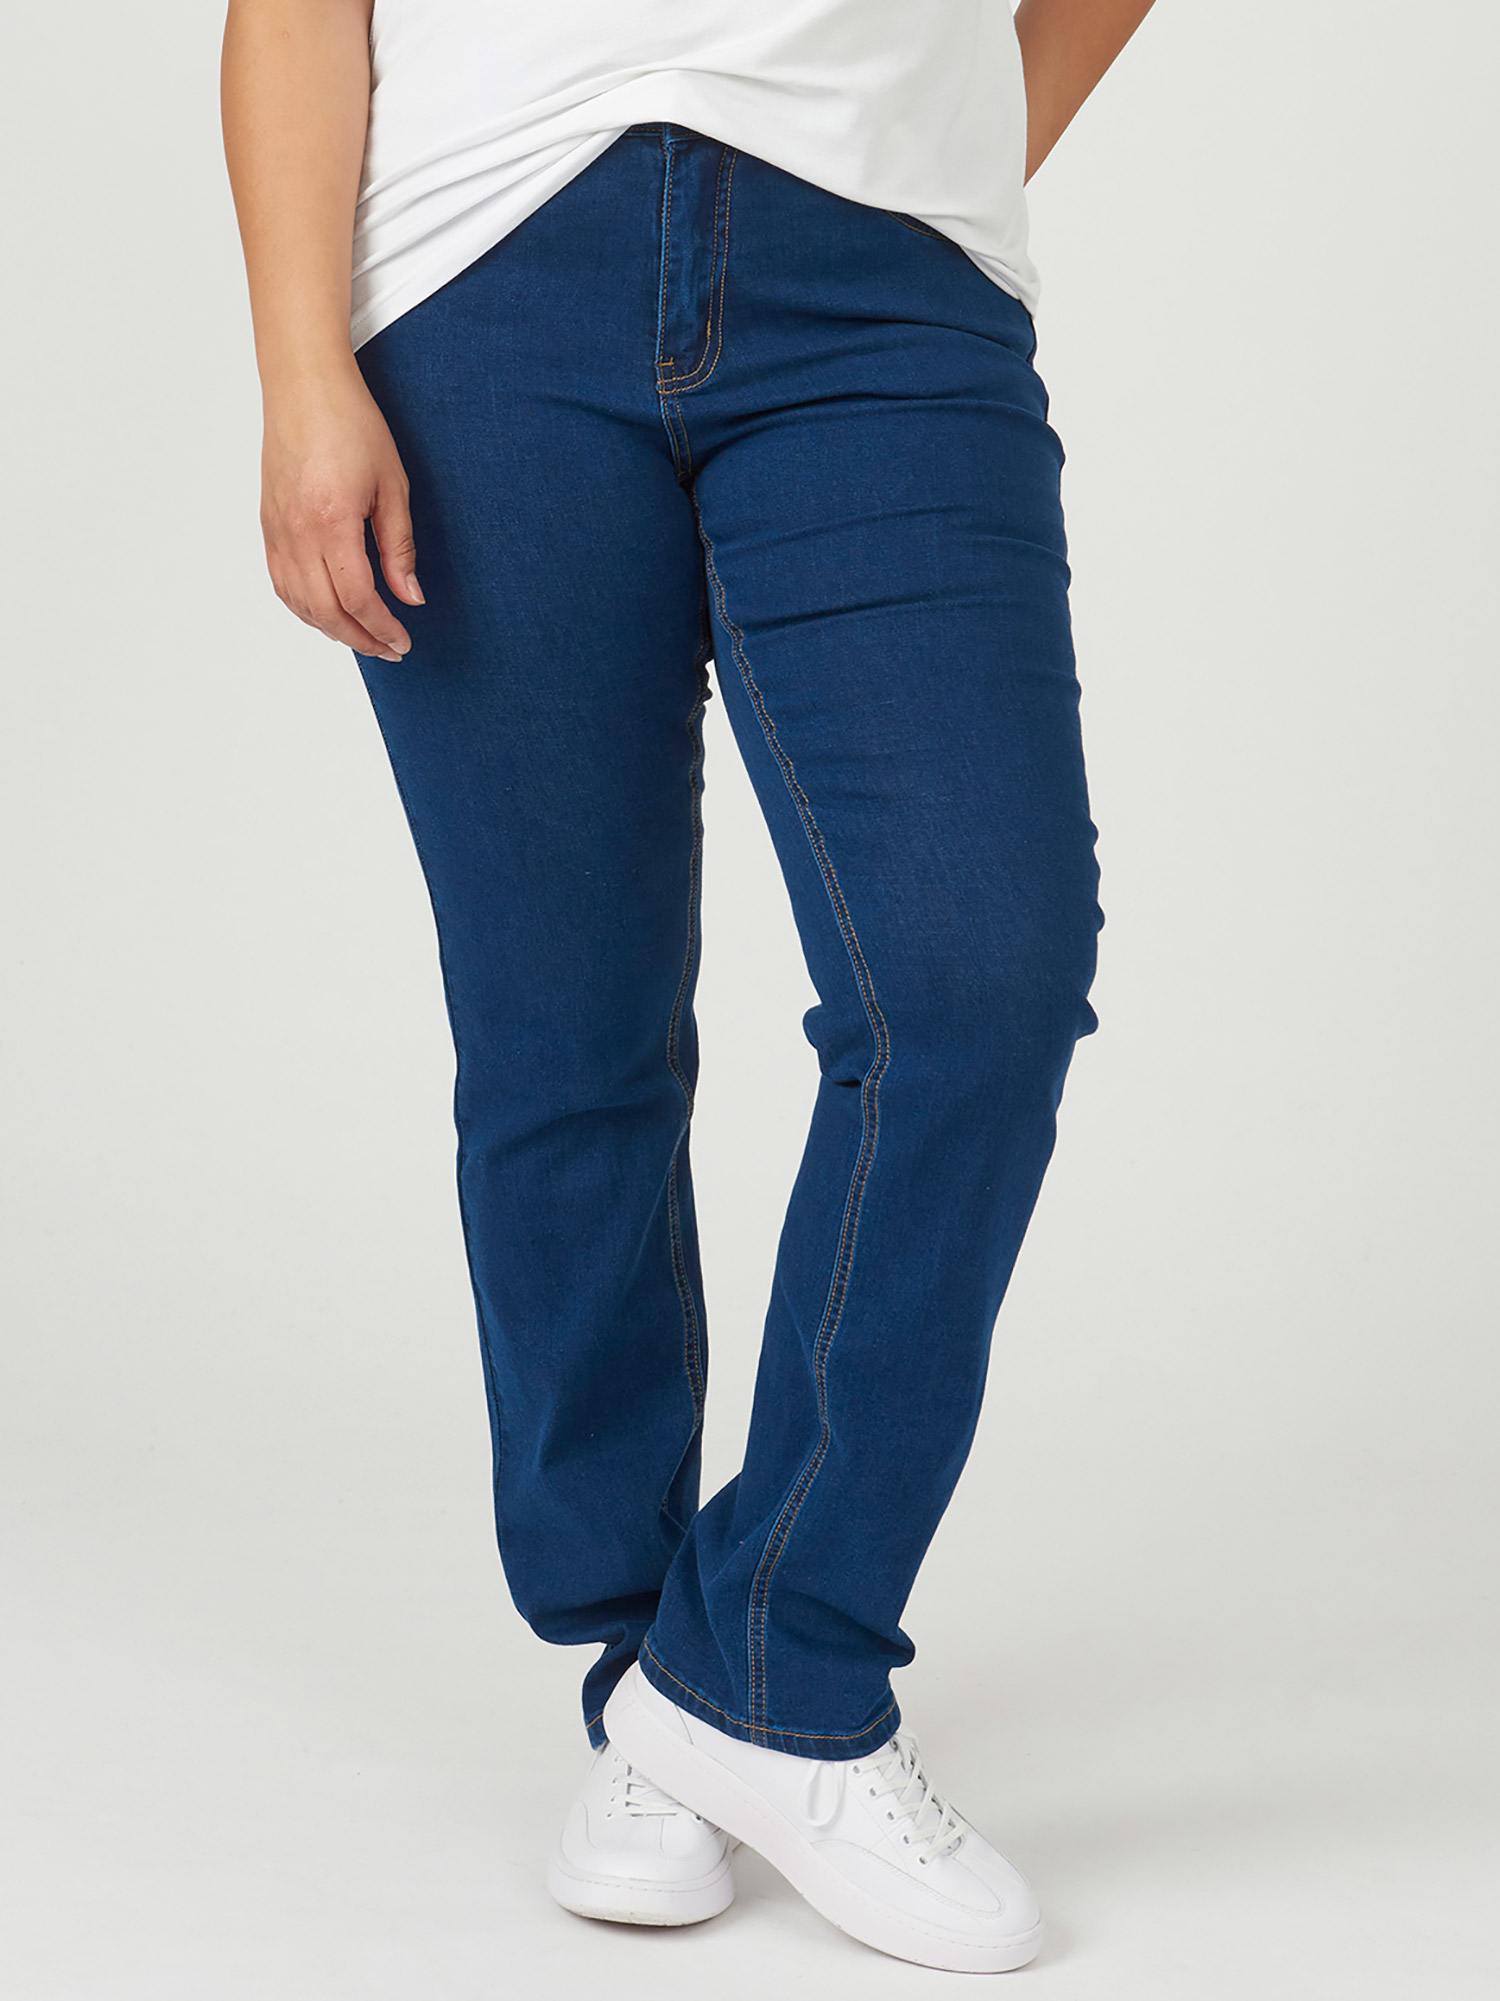 MONACO - Mørkeblå jeans med høyt liv fra Adia